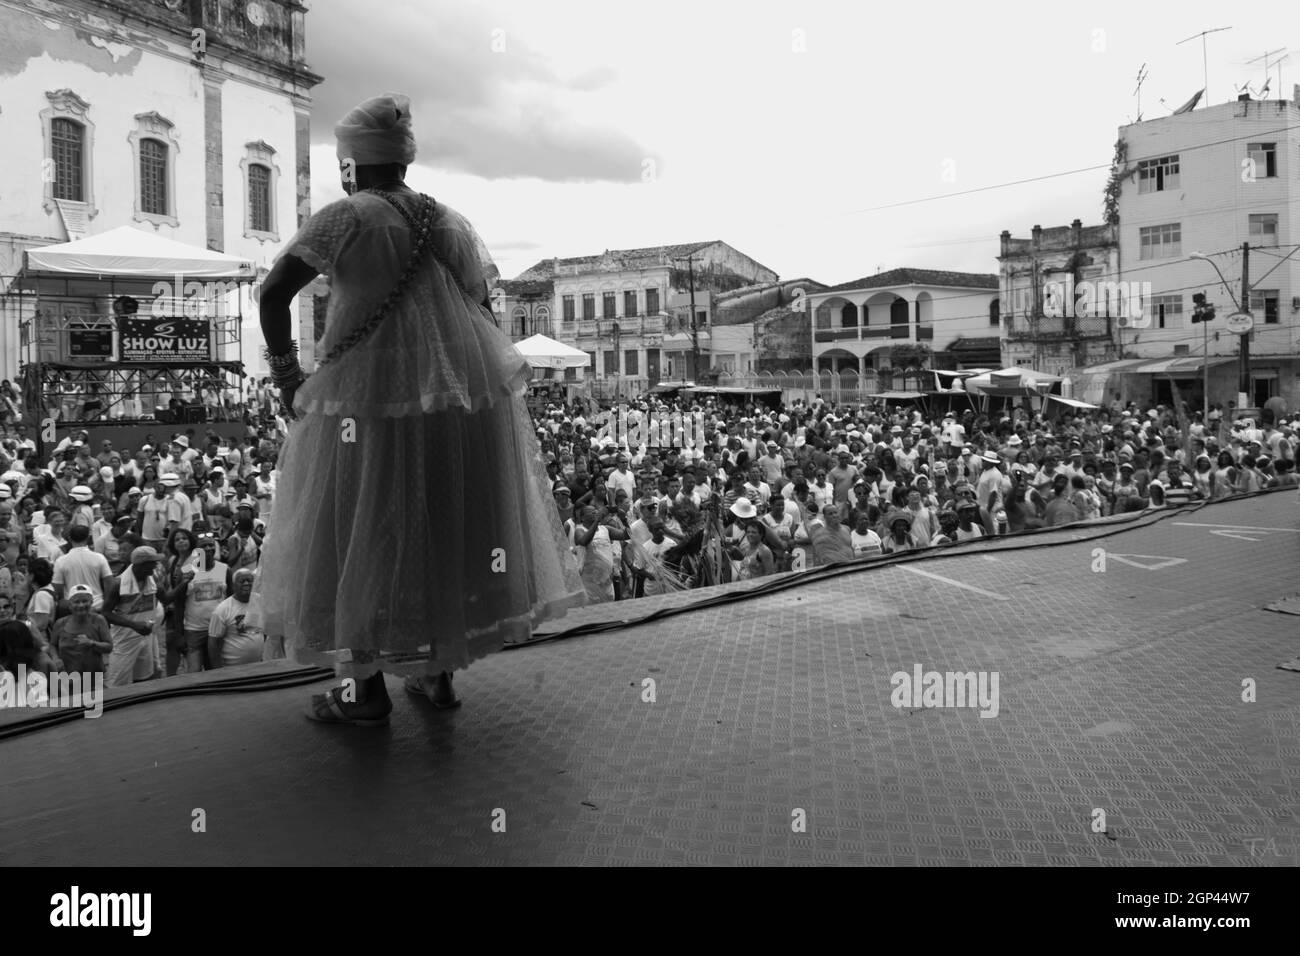 Salvador, Bahia, Brasilien - 02. Februar: Mitglied der ehrwürdigen Religion nimmt an einer Partei zu Ehren von Yemanja in der Stadt Salvador Teil. Stockfoto